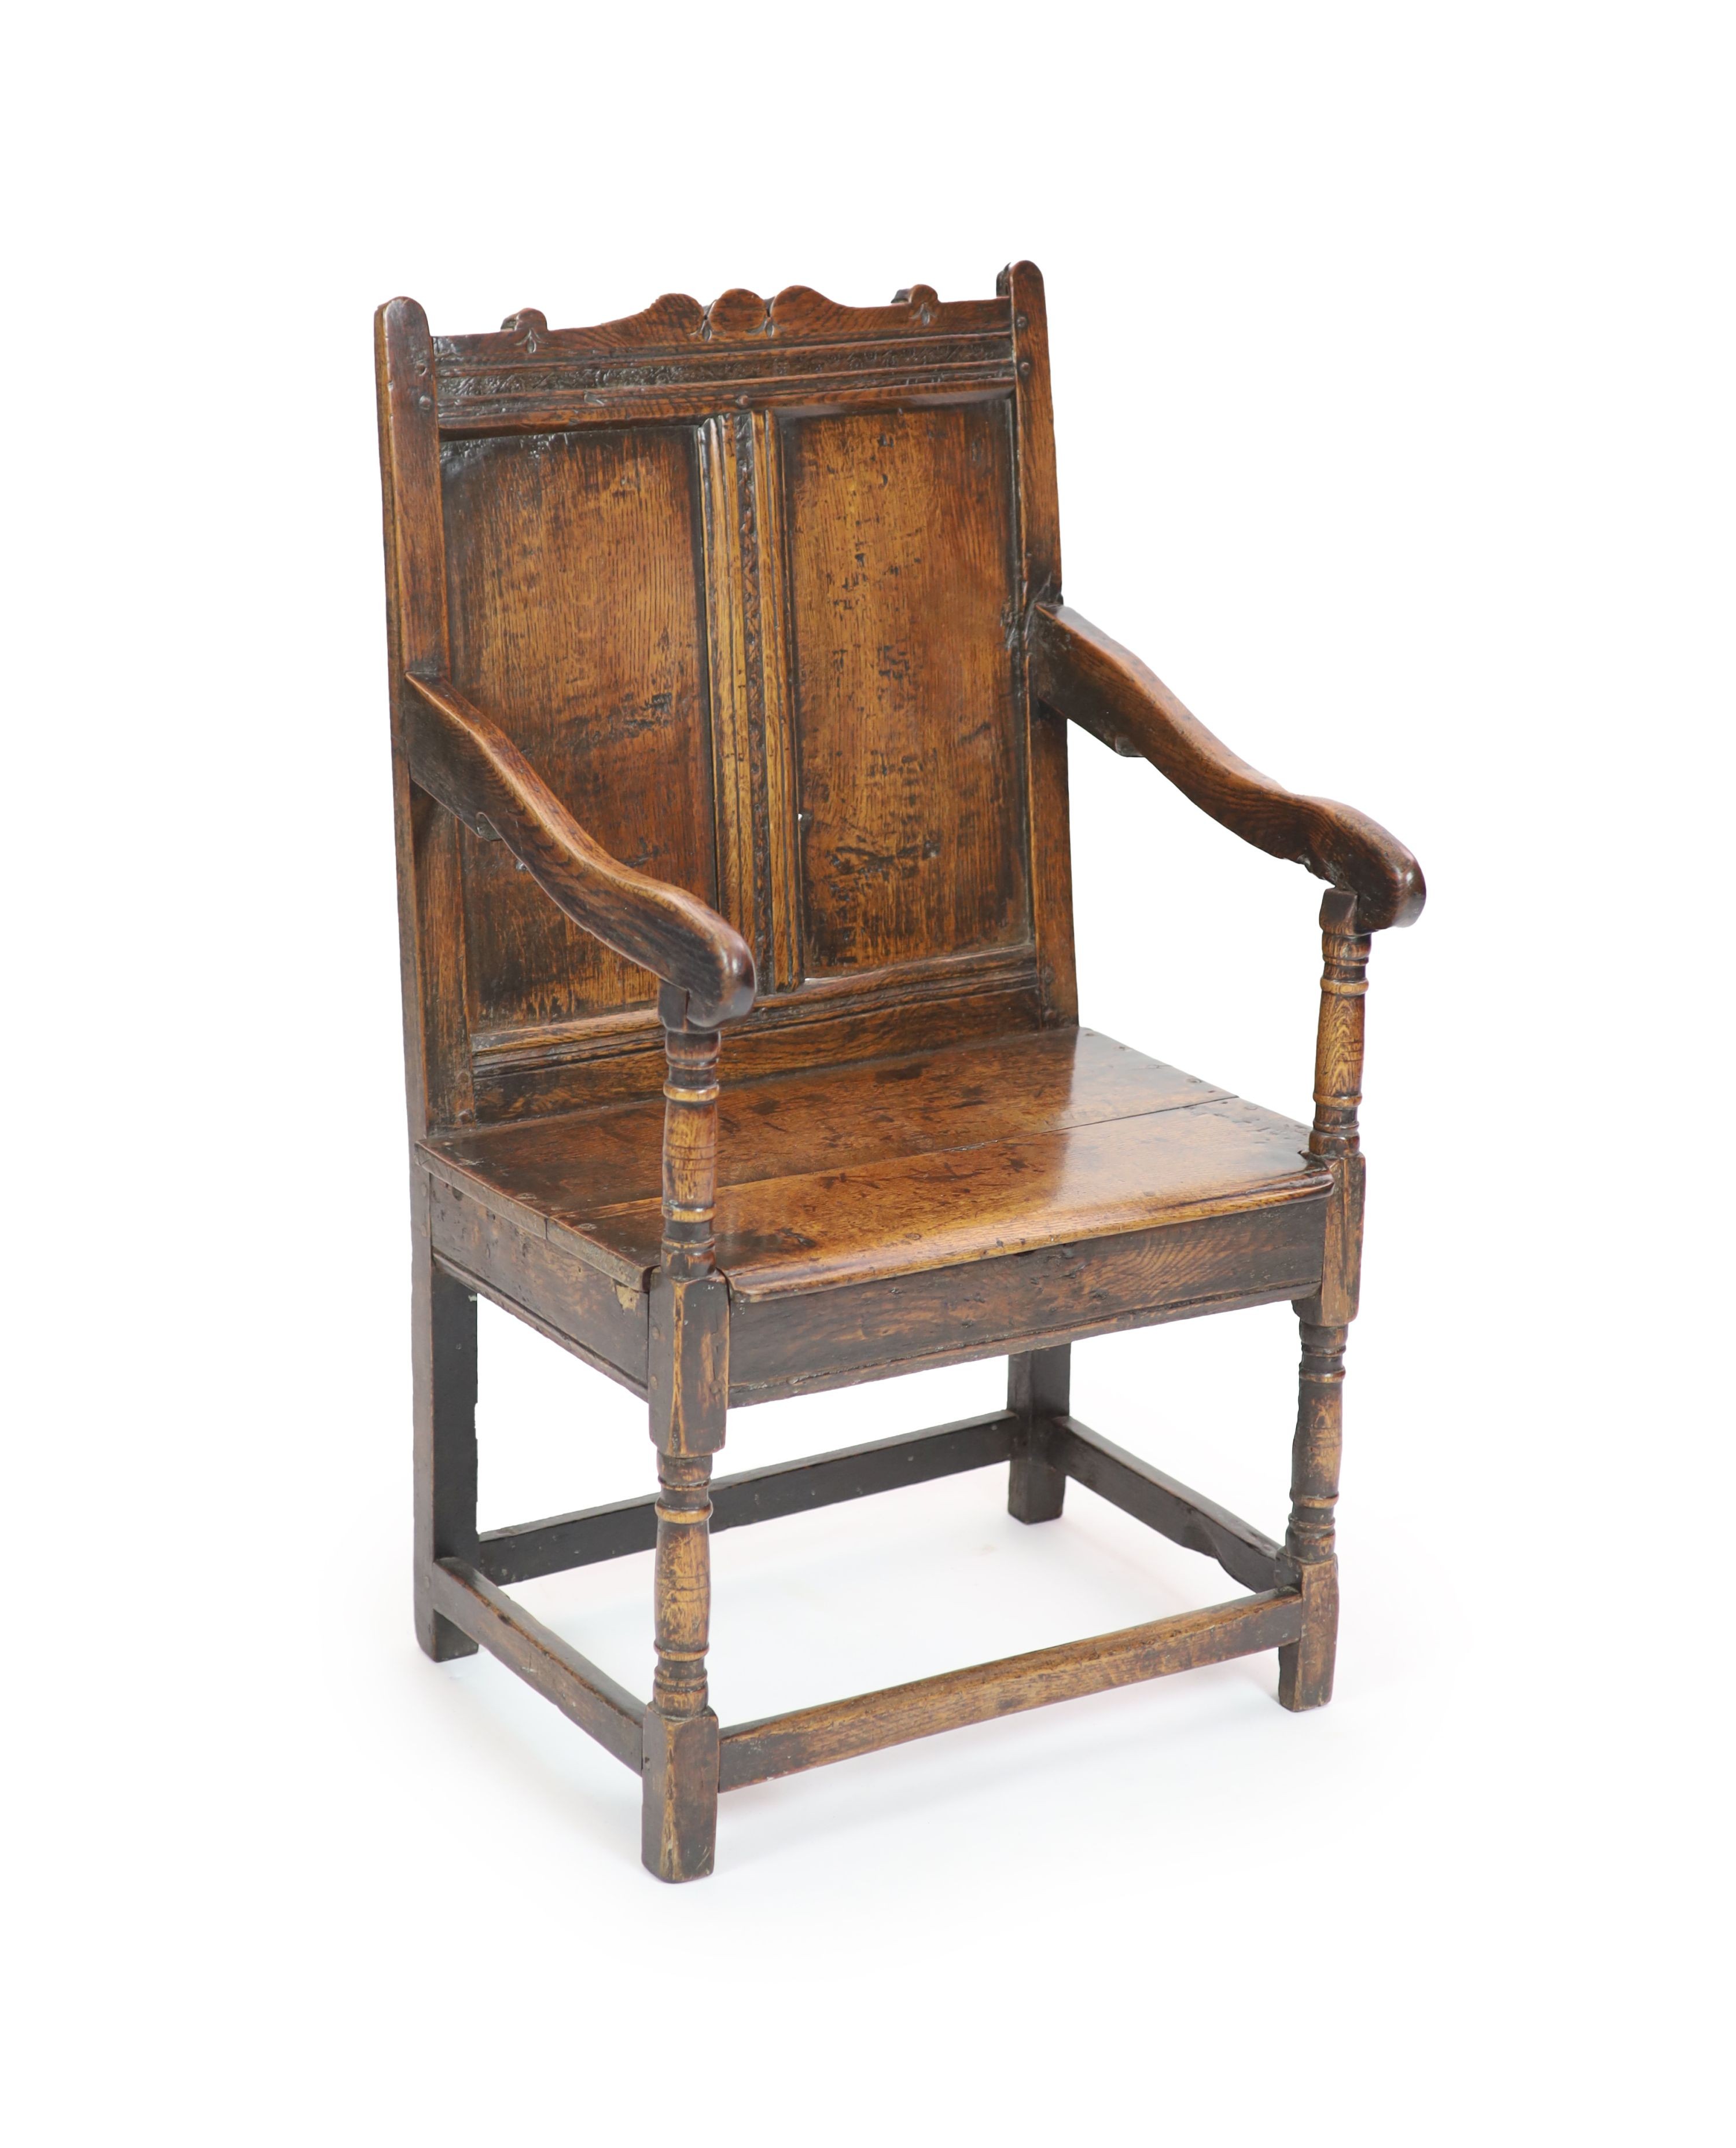 A 17th century oak open armchair, H 103cm. W 60cm. D 54cm.